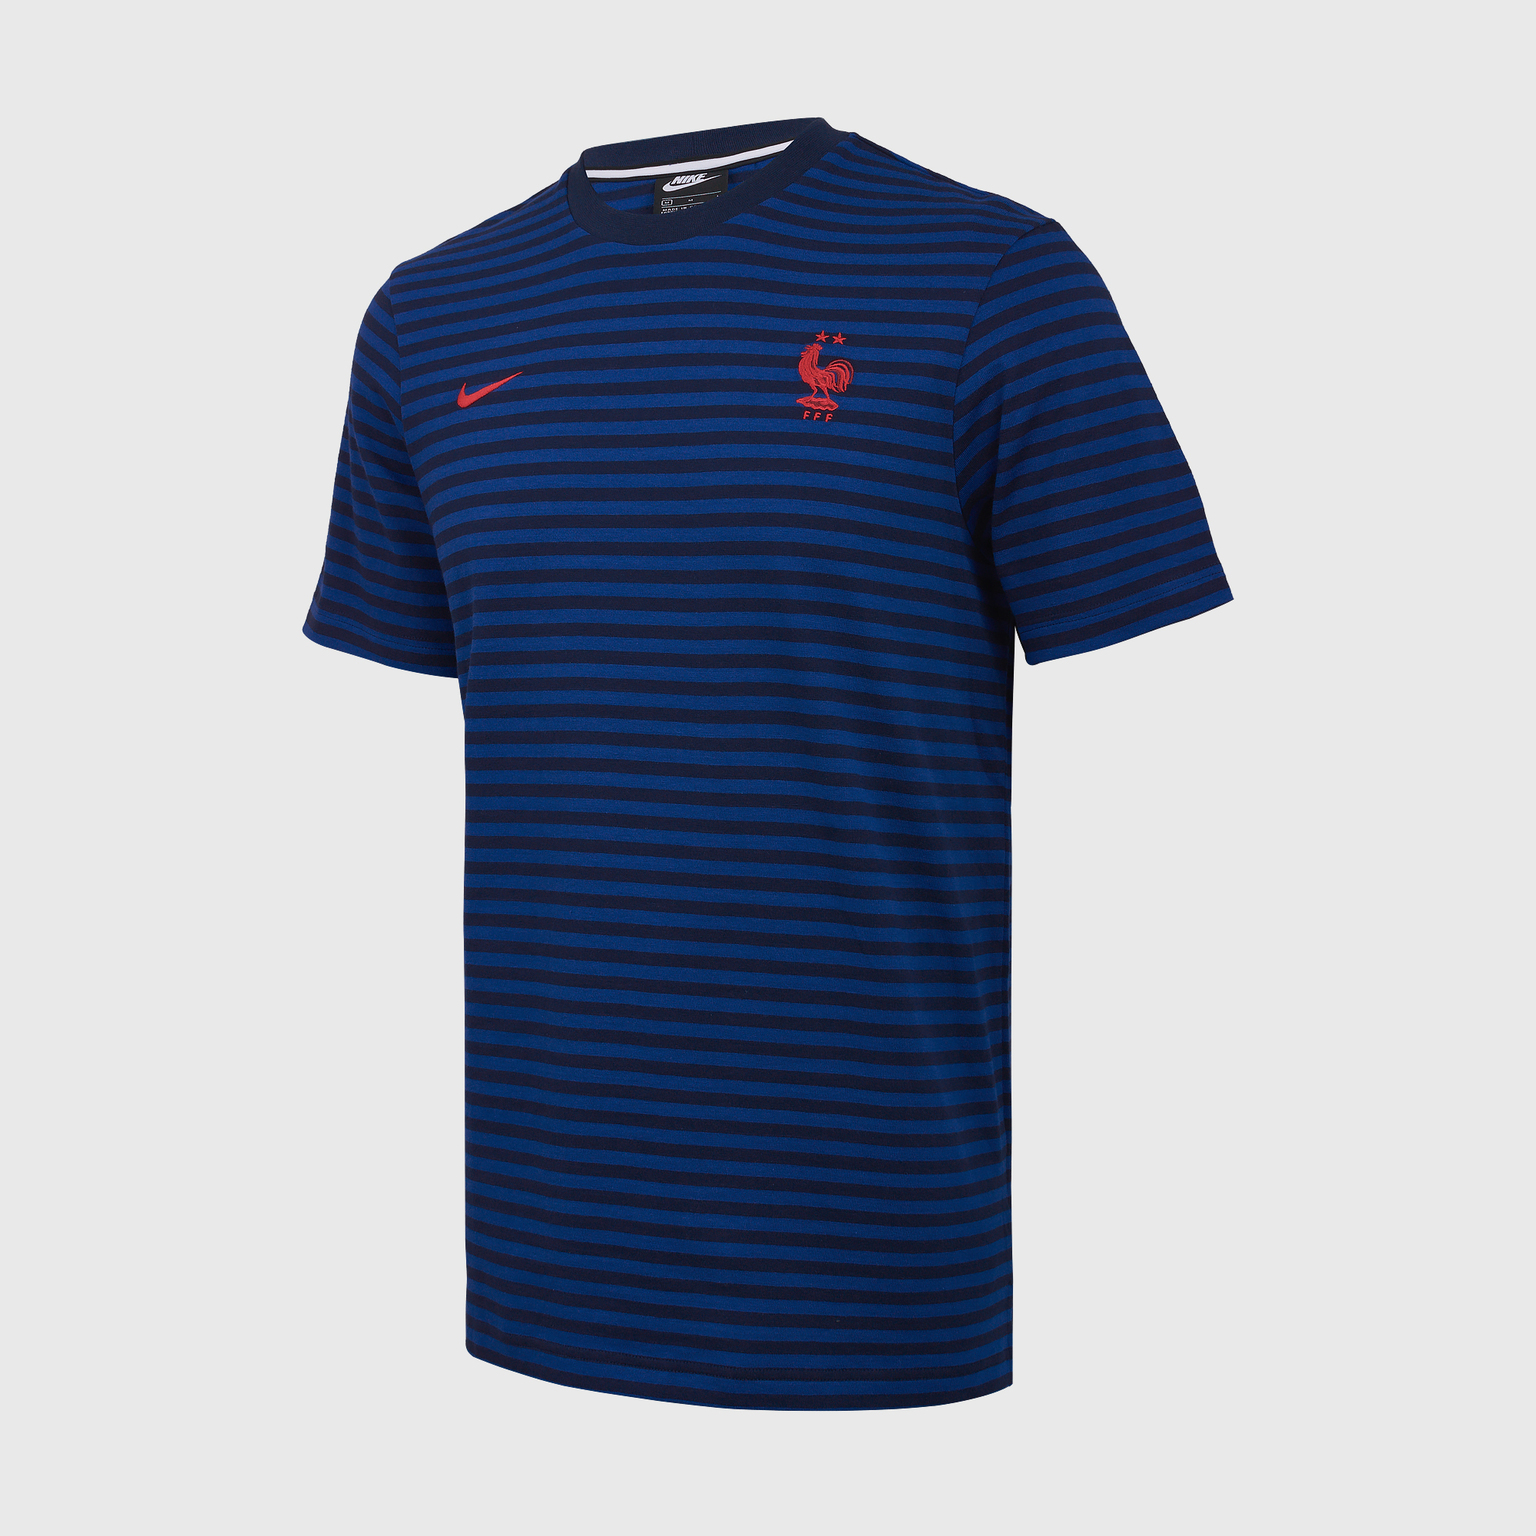 Футболка Nike сборной Франции сезон 2021/22